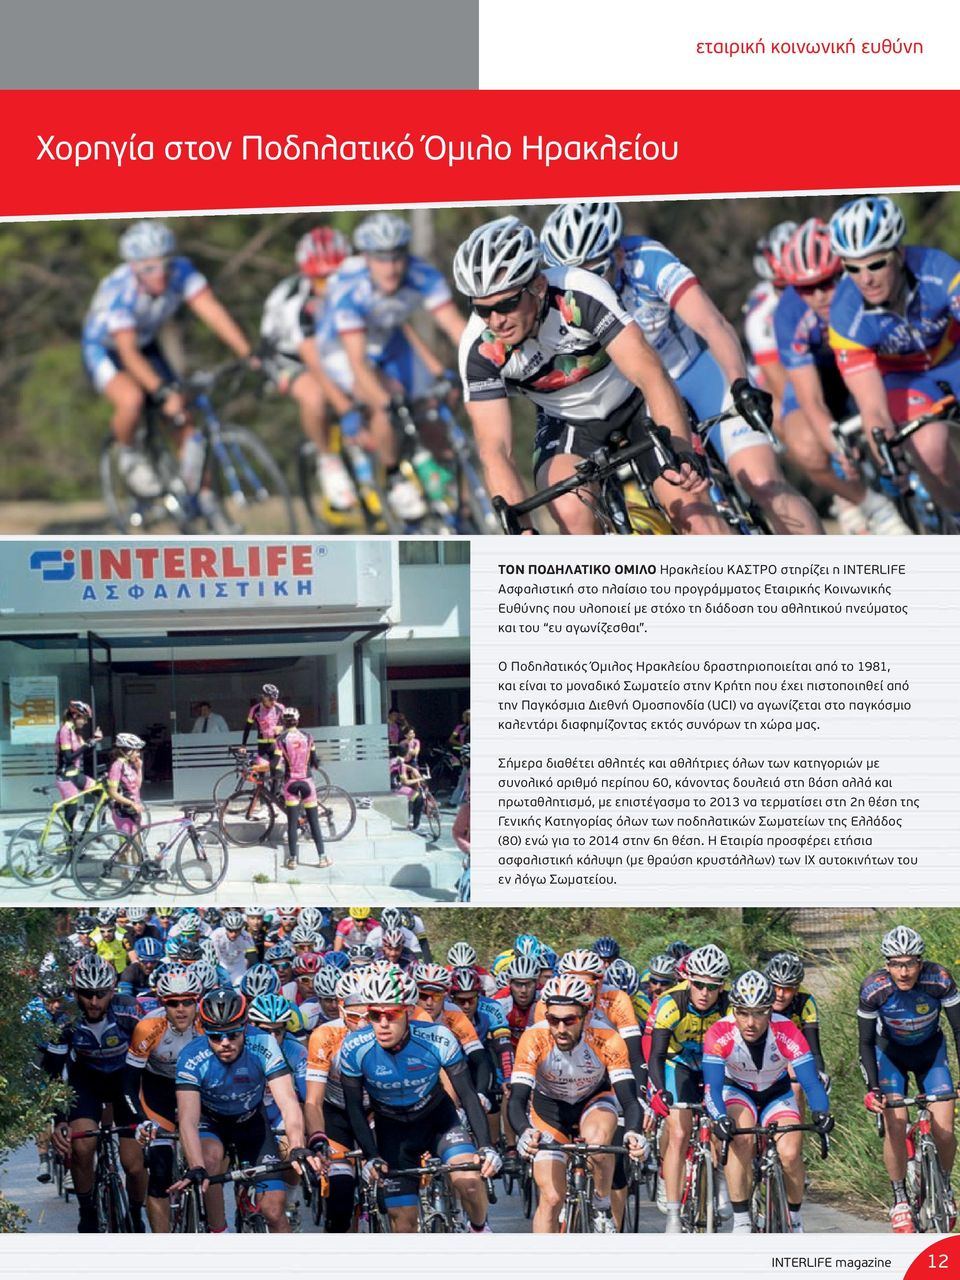 Ο Ποδηλατικός Όμιλος Ηρακλείου δραστηριοποιείται από το 1981, και είναι το μοναδικό Σωματείο στην Κρήτη που έχει πιστοποιηθεί από την Παγκόσμια Διεθνή Ομοσπονδία (UCI) να αγωνίζεται στο παγκόσμιο